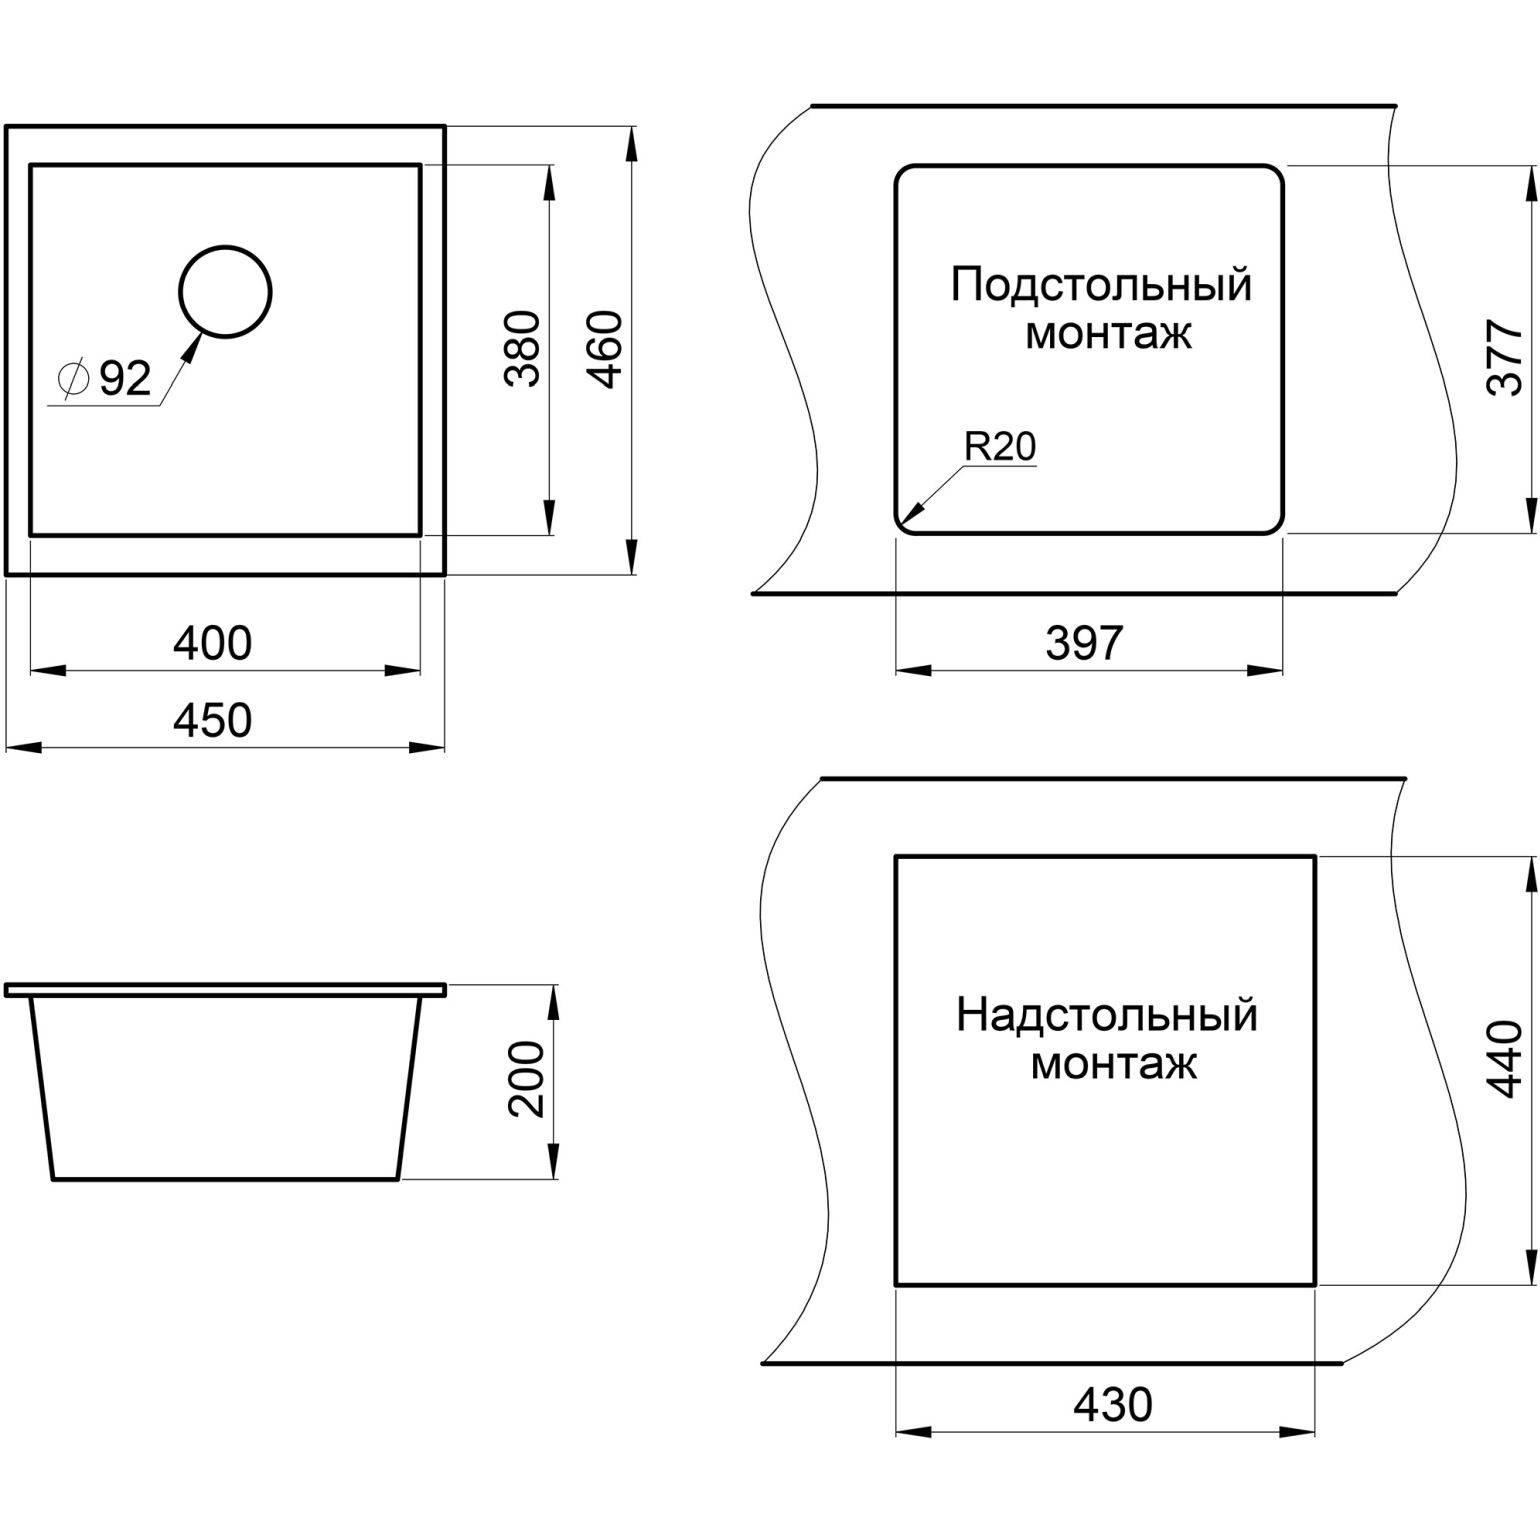 Кухонная мойка кварцевая Granula GR-4451 квадратная подстольная односекционная, подстольная, чаша 400х380, цвет пирит (4451pr)